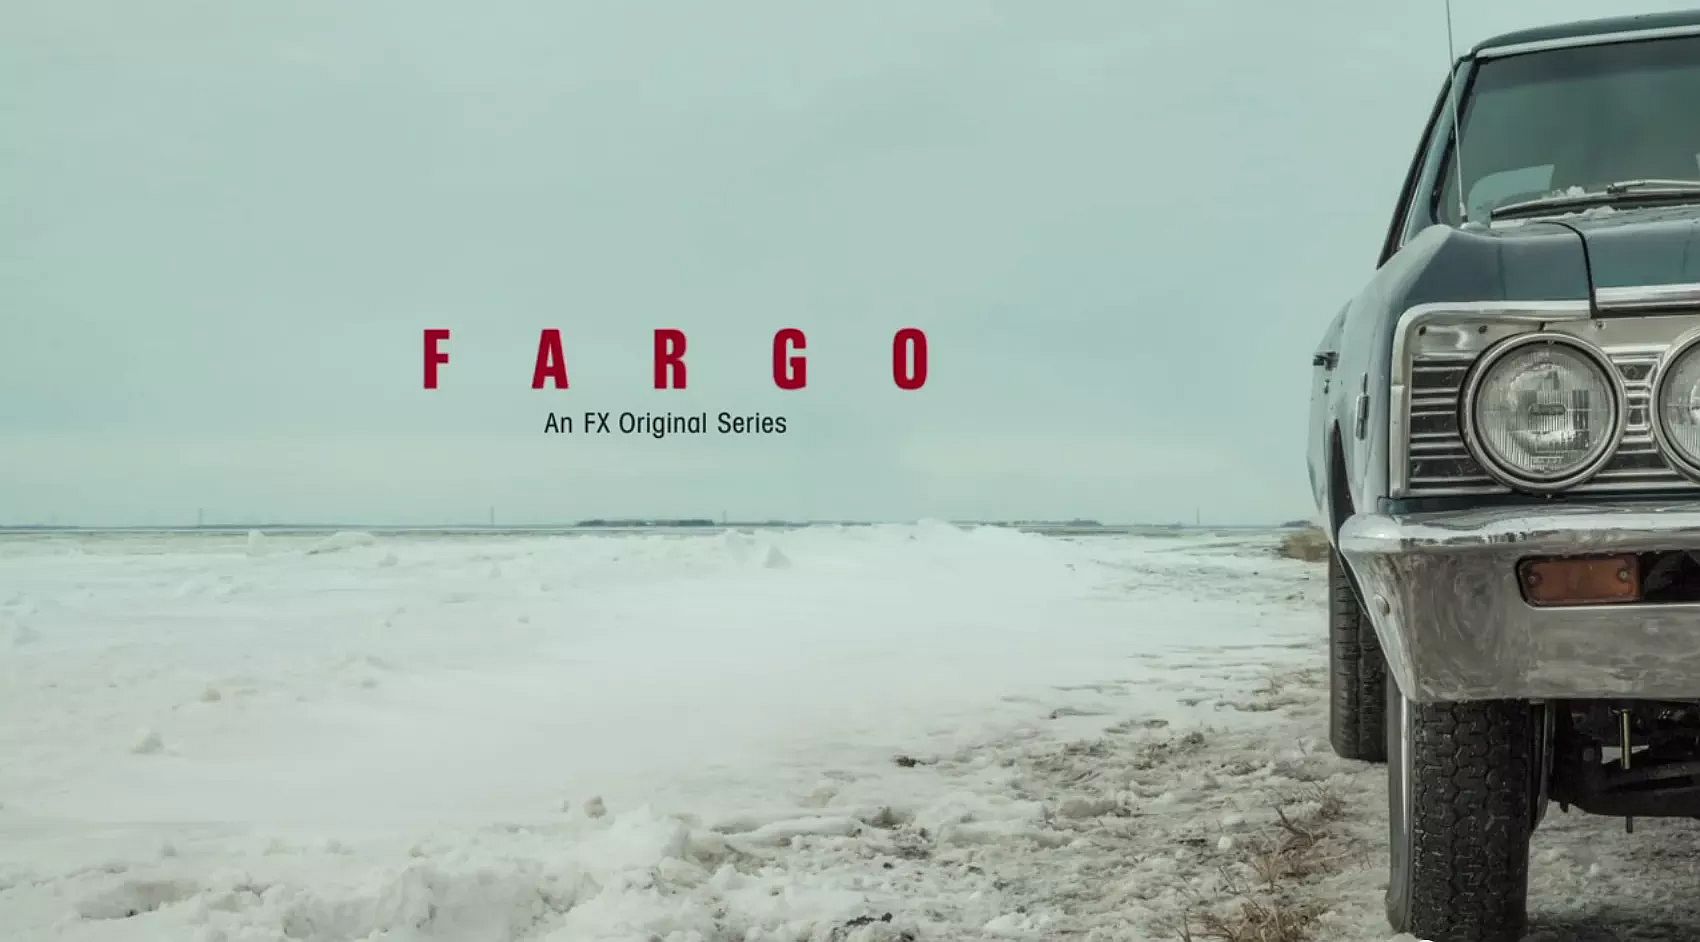 First Full Trailer Released For ‘Fargo’ Season 2